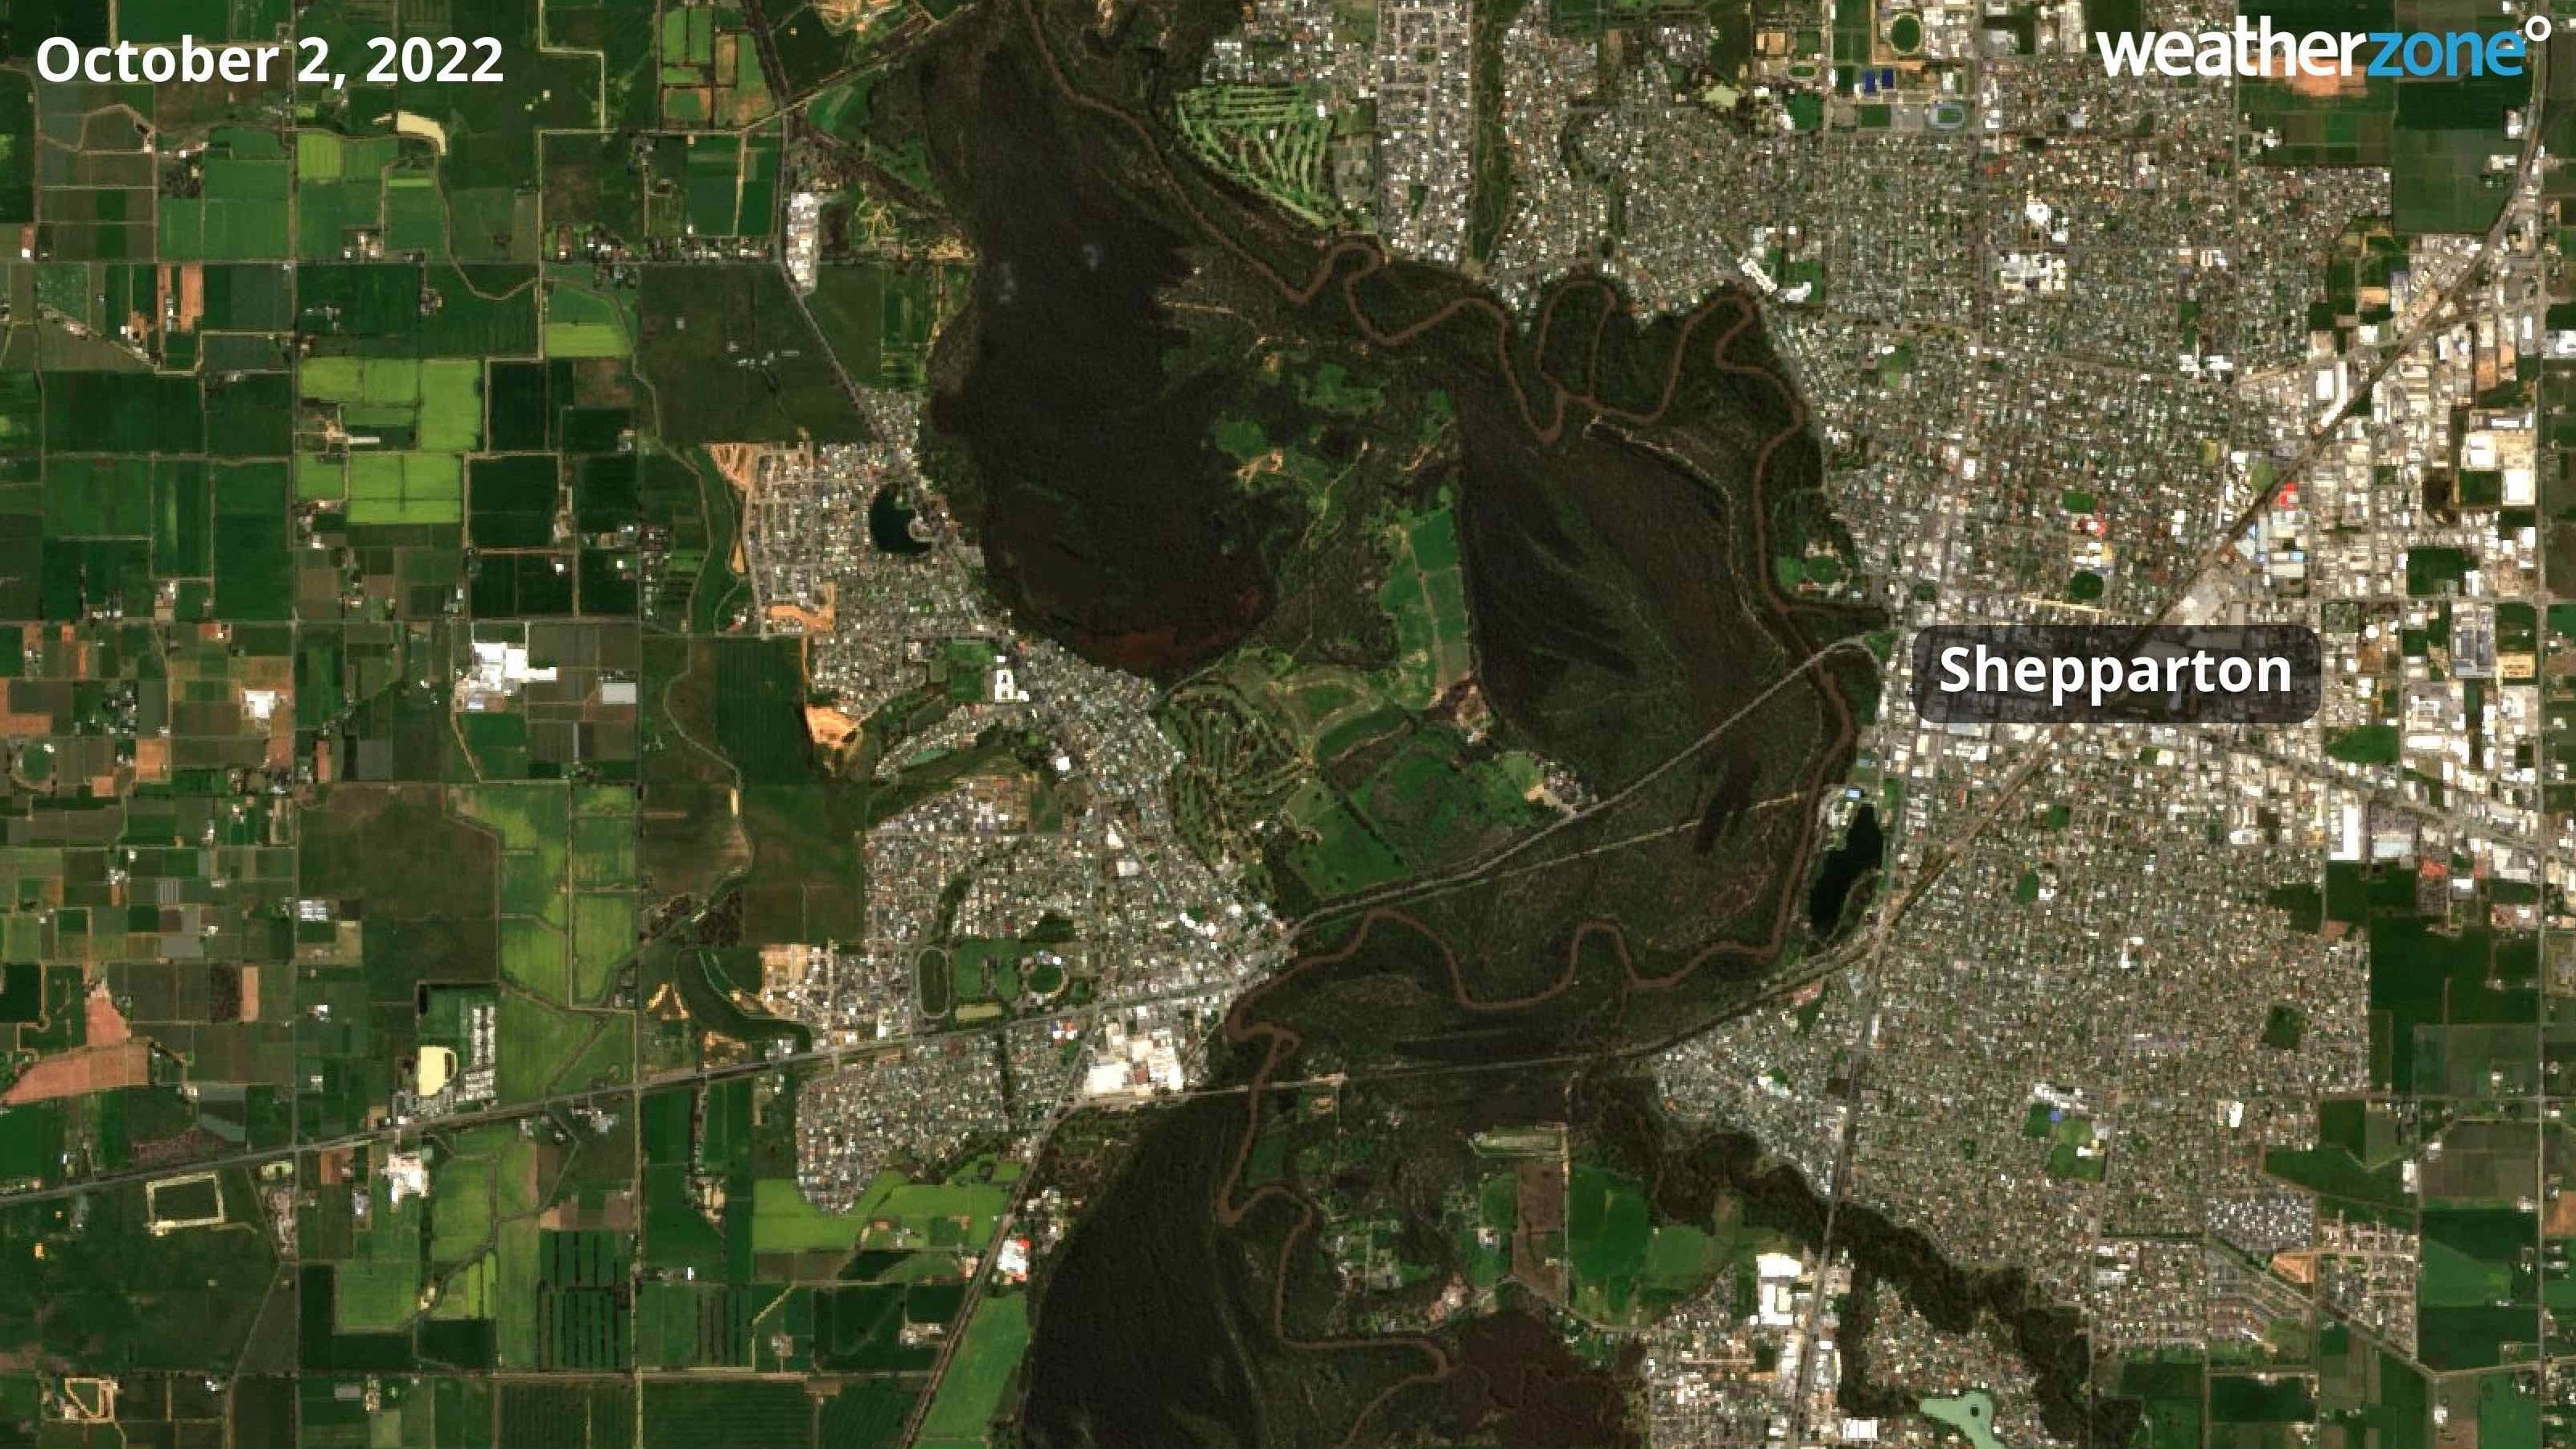 Le immagini satellitari che mostrano il fiume Goulburn a Shepparton mostrano quanto il fiume si sia riversato nelle ultime due settimane.  Questa foto è stata scattata il 2 ottobre 2022. 